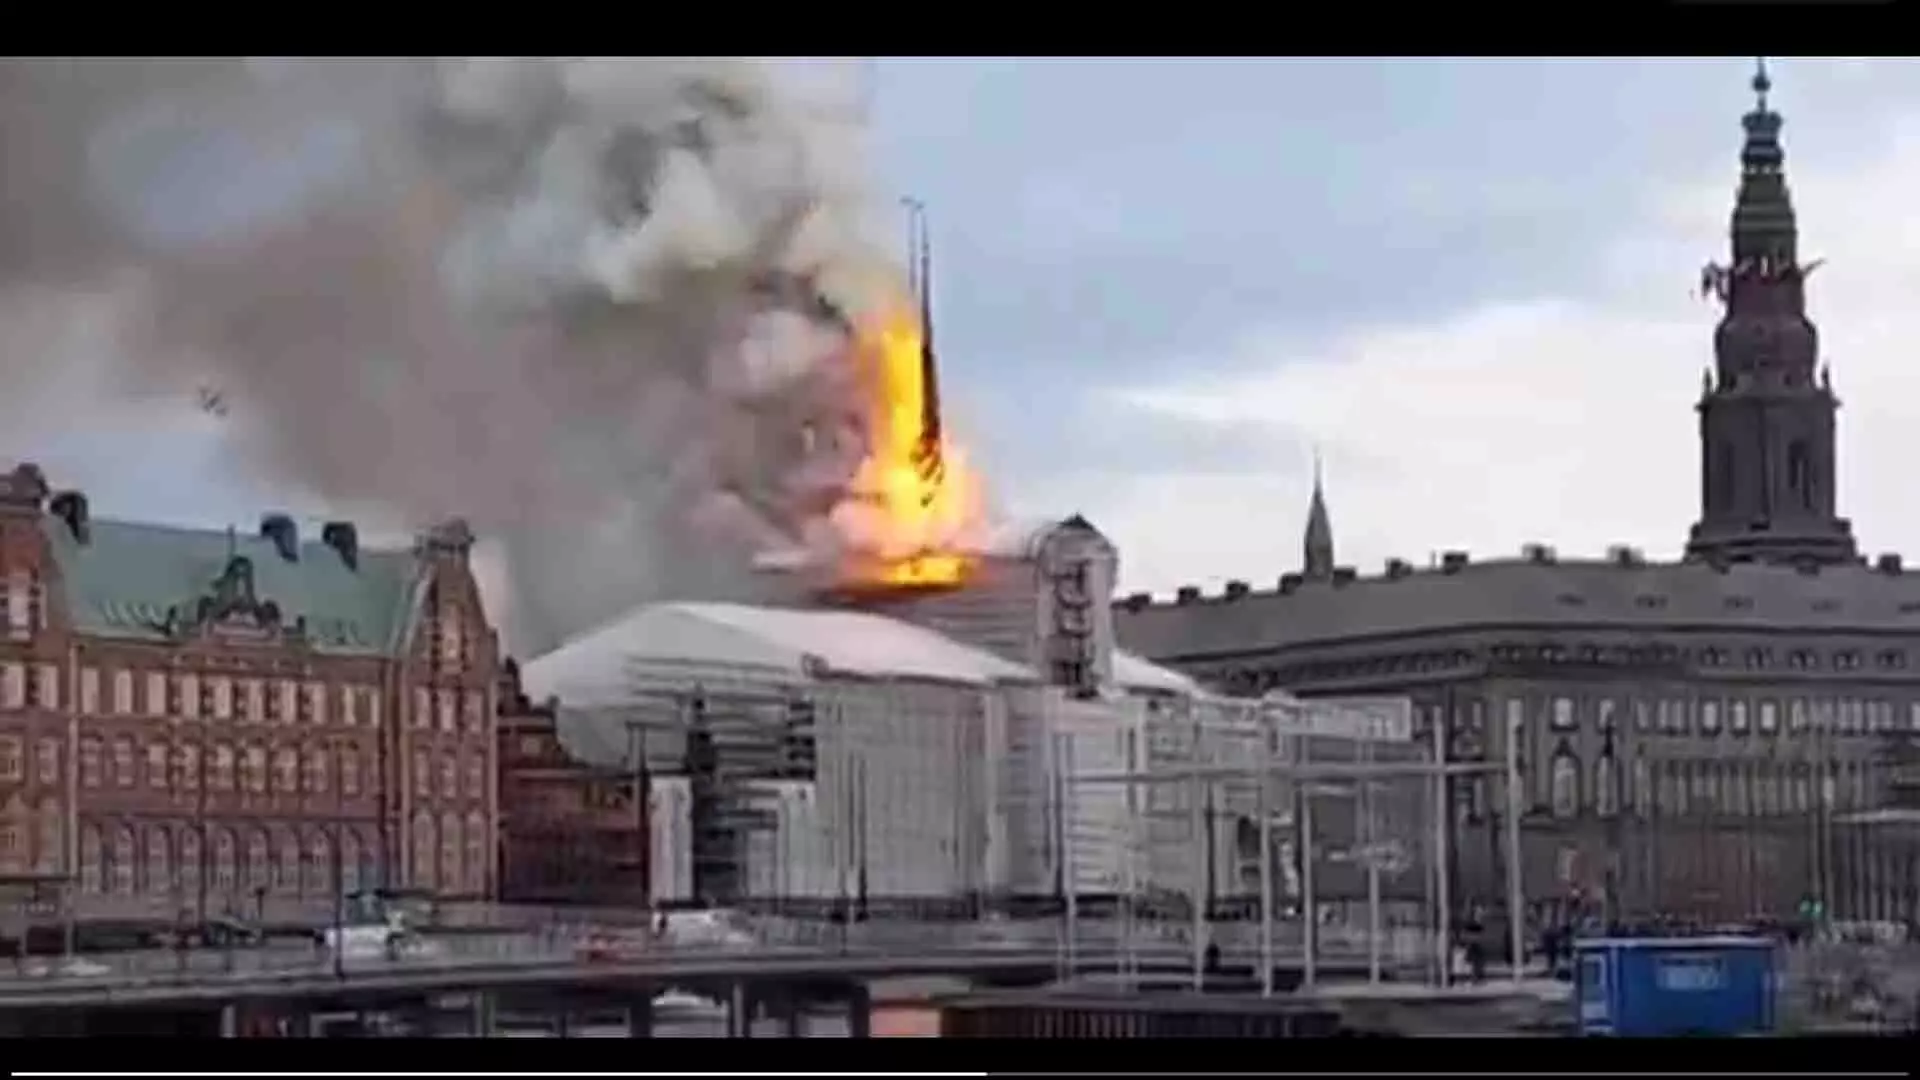 डेनमार्क में ऐतिहासिक स्टॉक एक्सचेंज में लगी भीषण आग, देखें वीडियो...